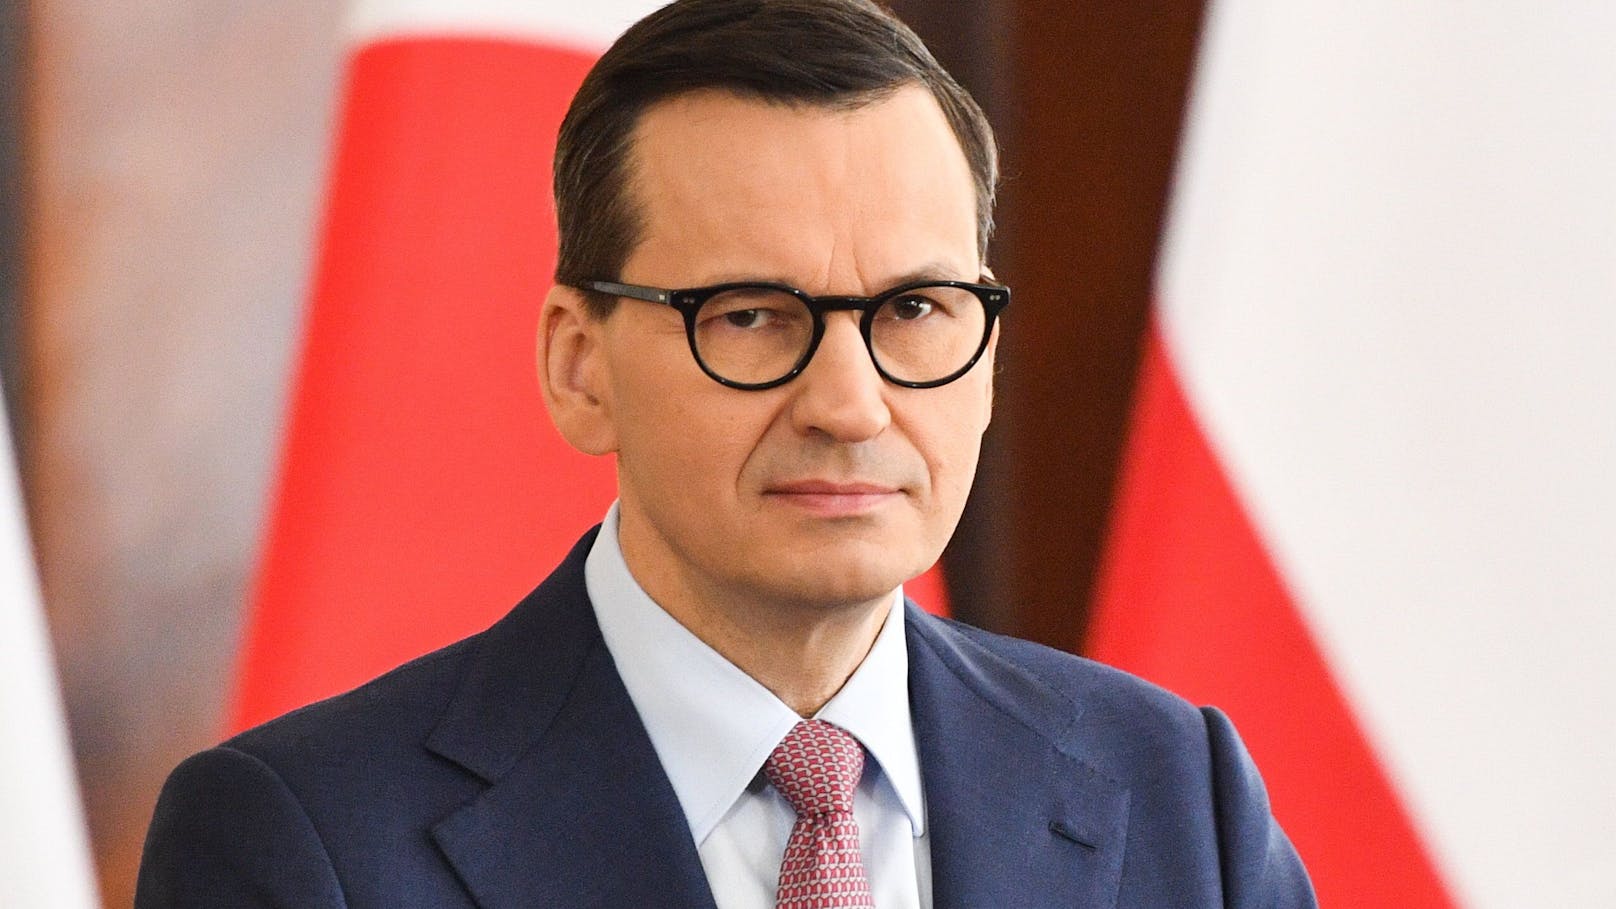 Der polnische Ministerpräsident <strong>Mateusz Morawiecki</strong> fordert die Einführung der Todesstrafe für besonders brutale Verbrechen.